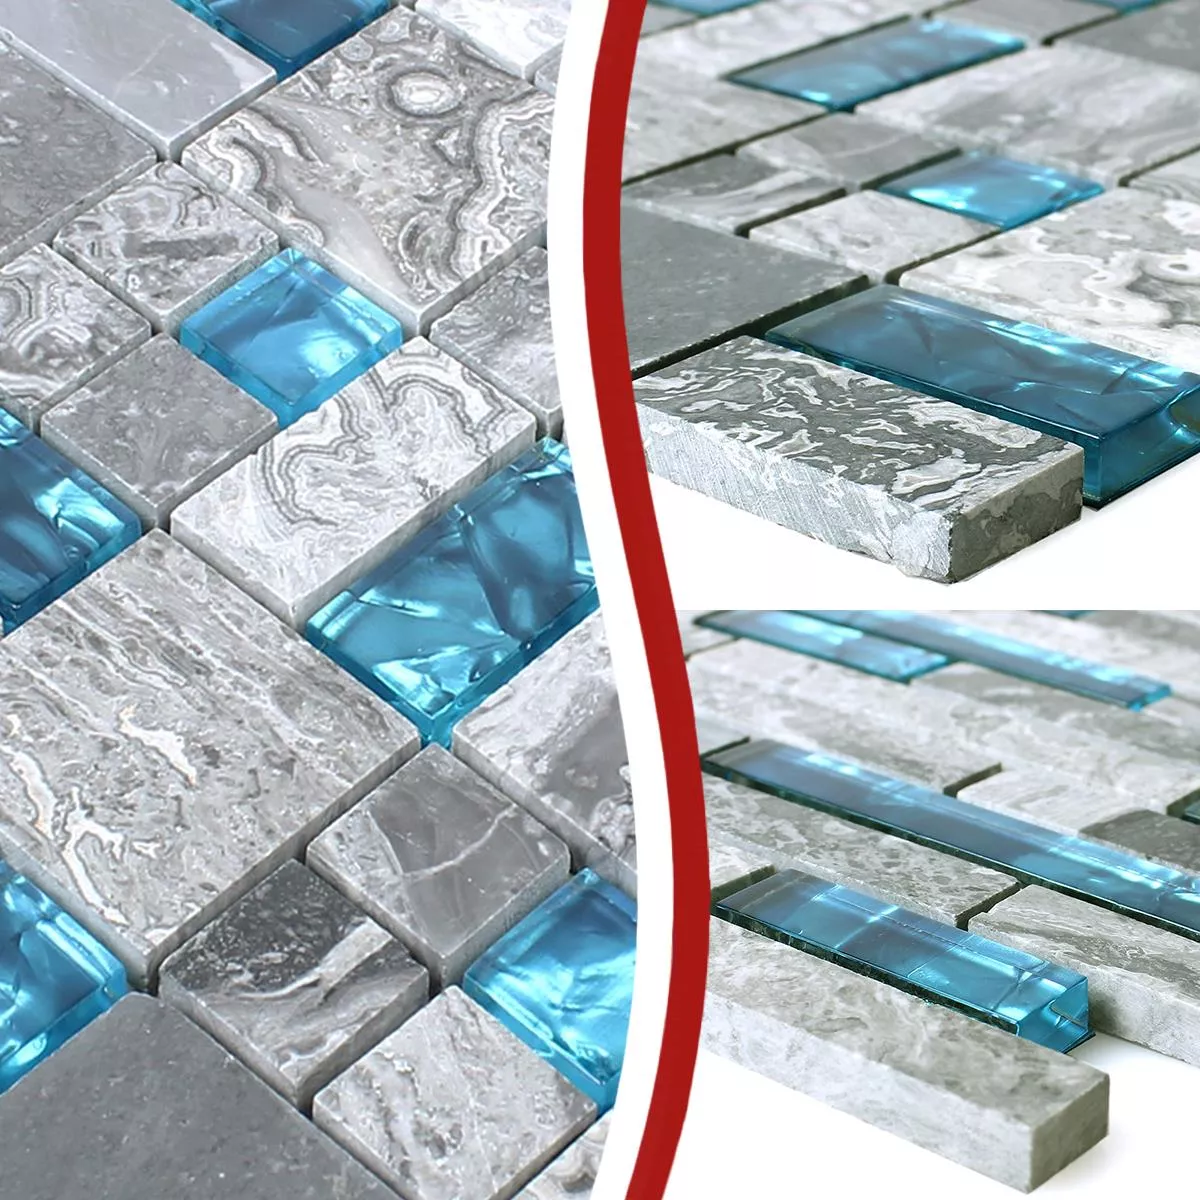 Padrão de Mosaico De Vidro Ladrilhos De Pedra Natural Sinop Cinza Azul